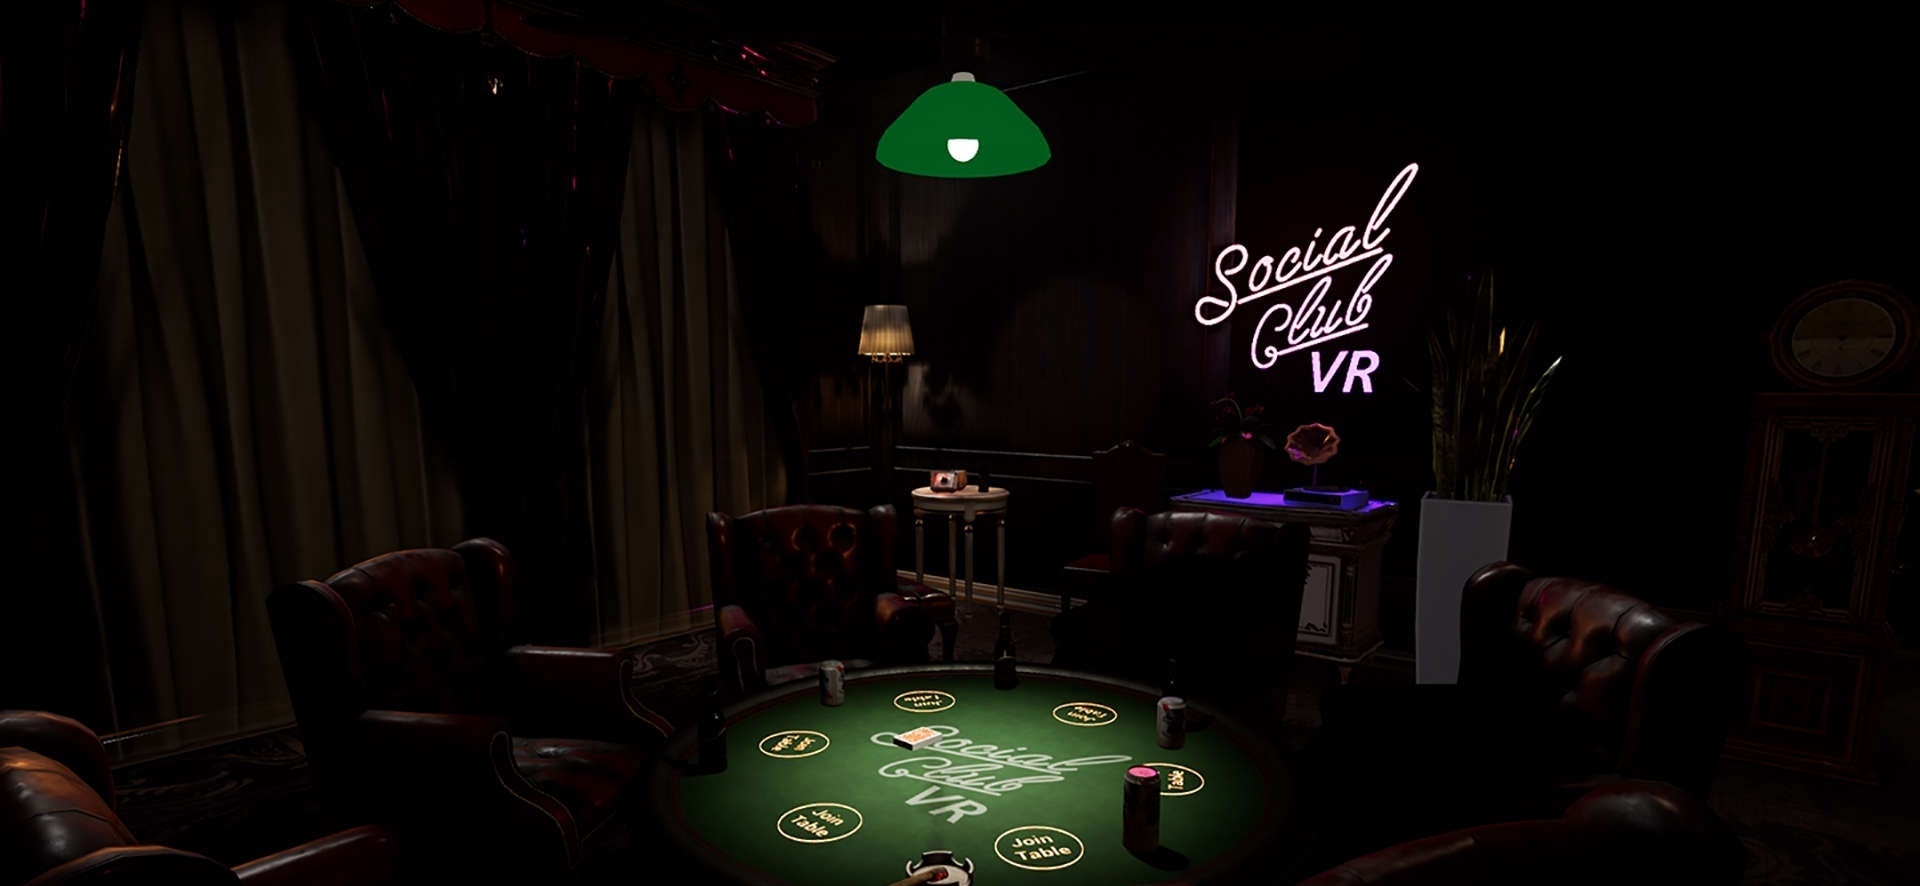 [VR交流学习] 联谊俱乐部 VR (Social Club VR : Casino Nights)